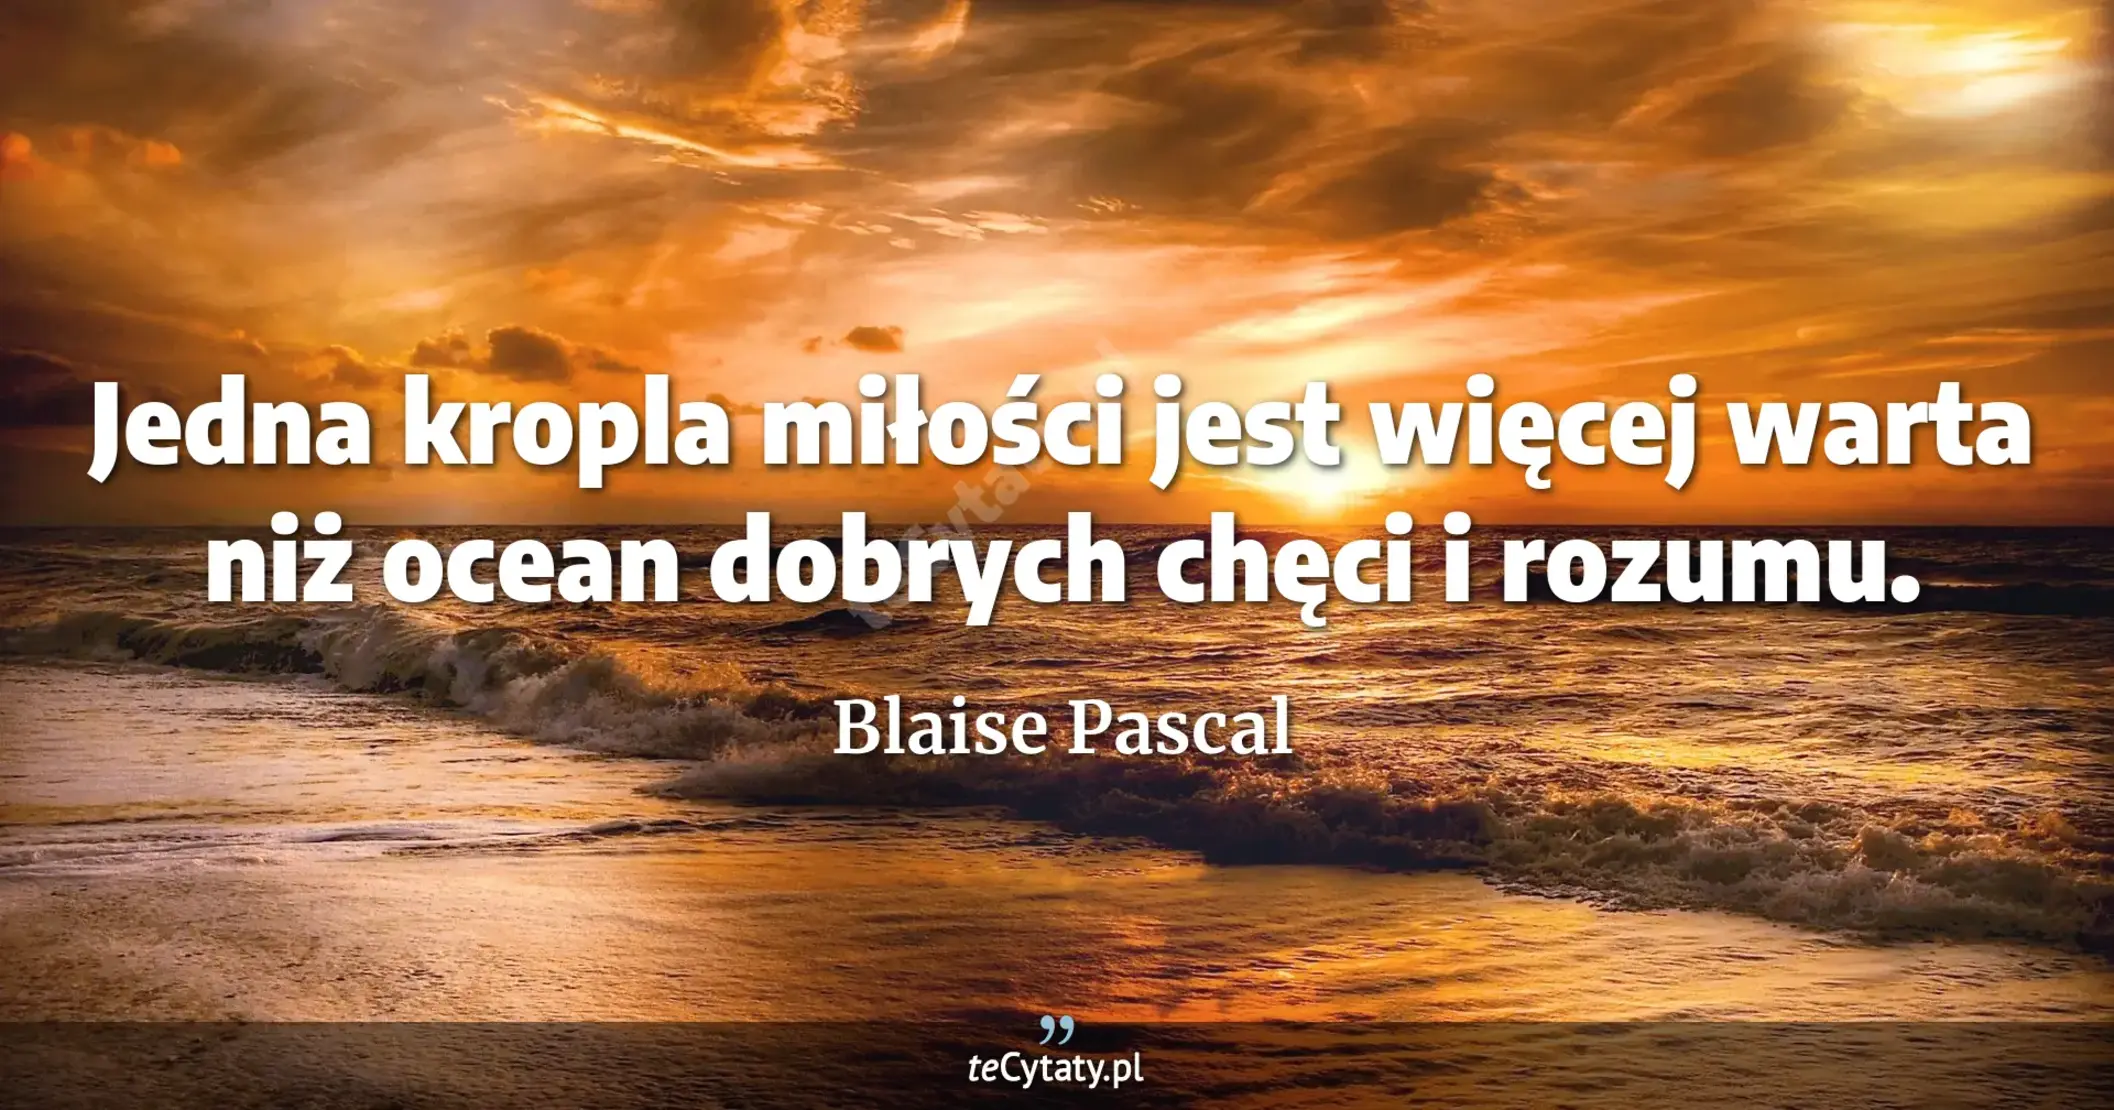 Jedna kropla miłości jest więcej warta niż ocean dobrych chęci i rozumu. - Blaise Pascal